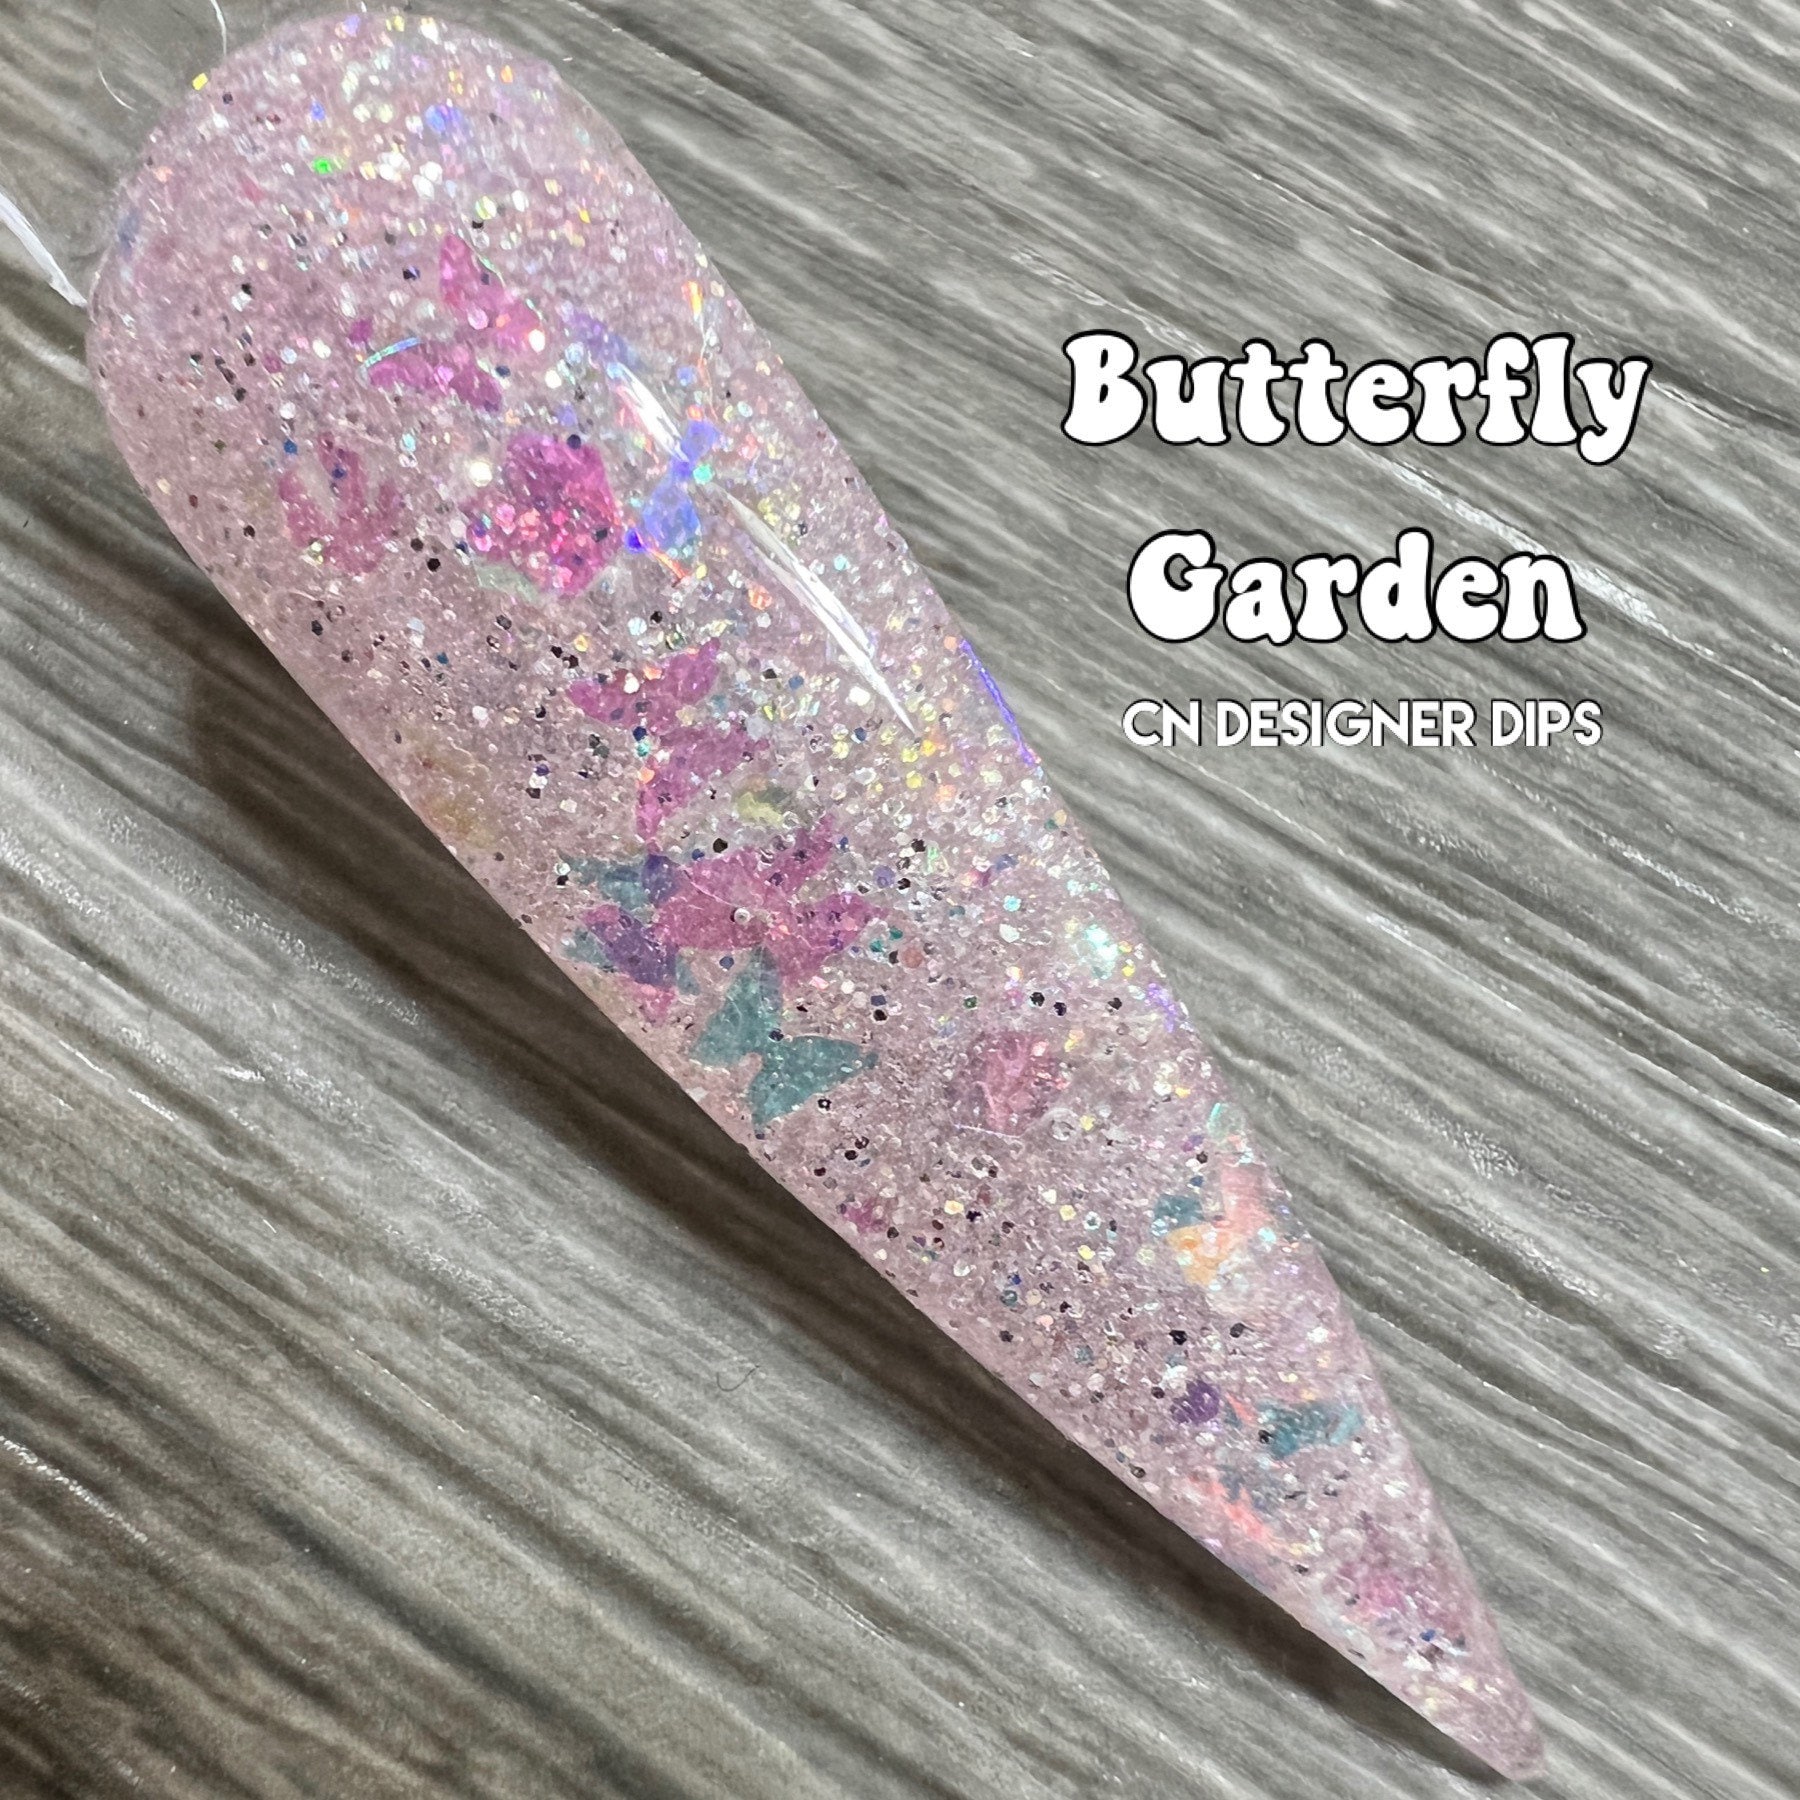 Butterfly Garden - Dip-Pulver, Dip-Pulver Für Nägel, Nagel-Dip, Dip-Nagelpulver, Acryl, Acrylpulver, Nägel von Etsy - CNDesignerDips